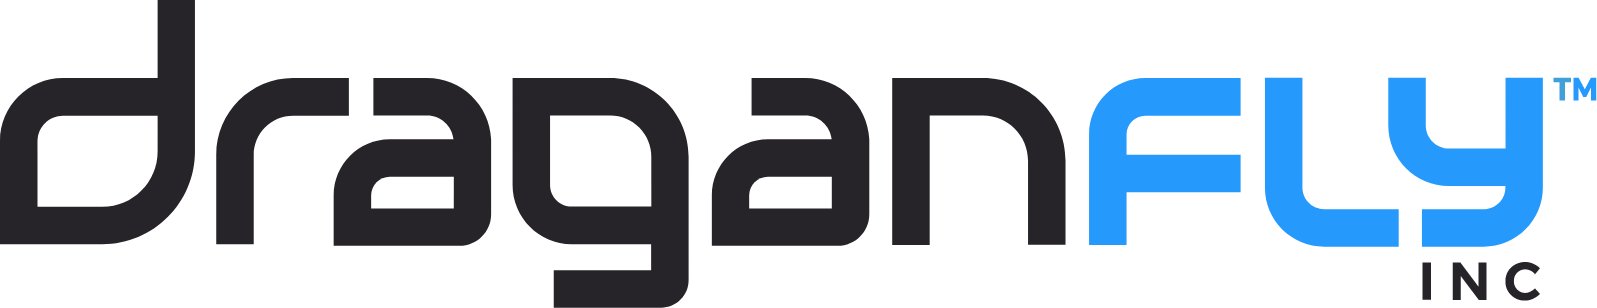 Draganfly logo large (transparent PNG)